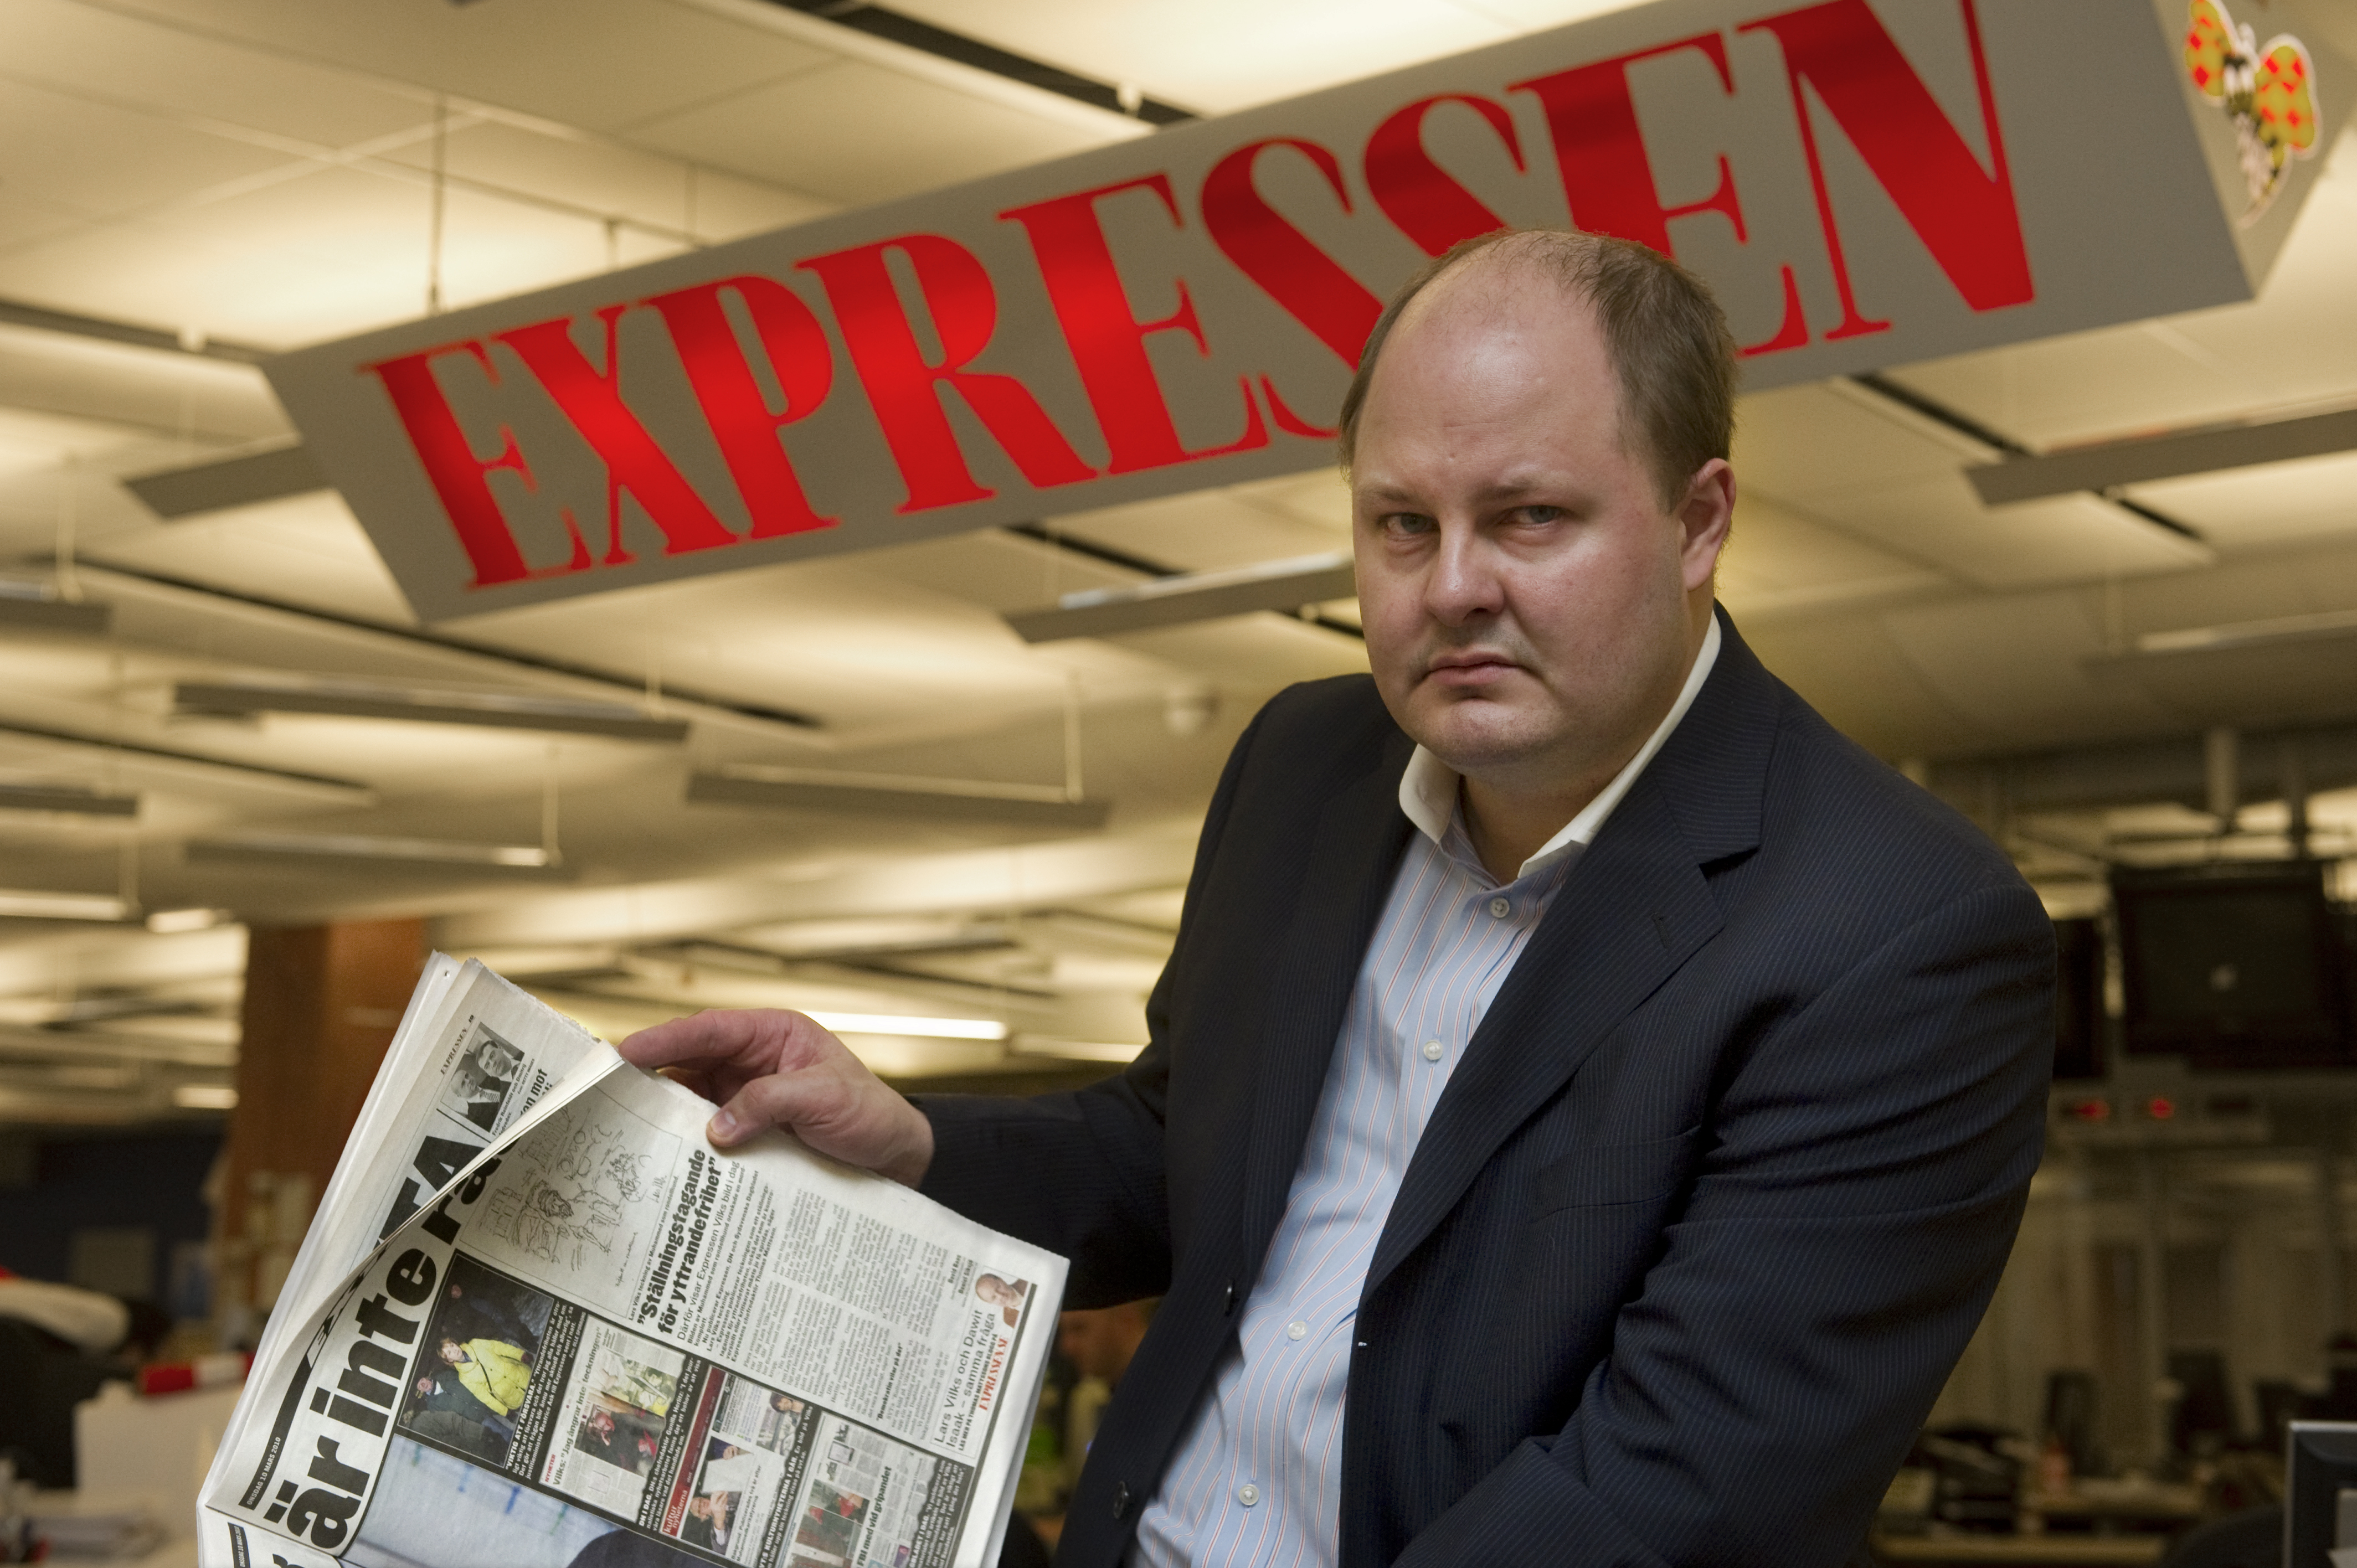 Expressens chefredaktör Thomas Mattsson menar att hans tidning utsatts för sverigedemokratisk propaganda.